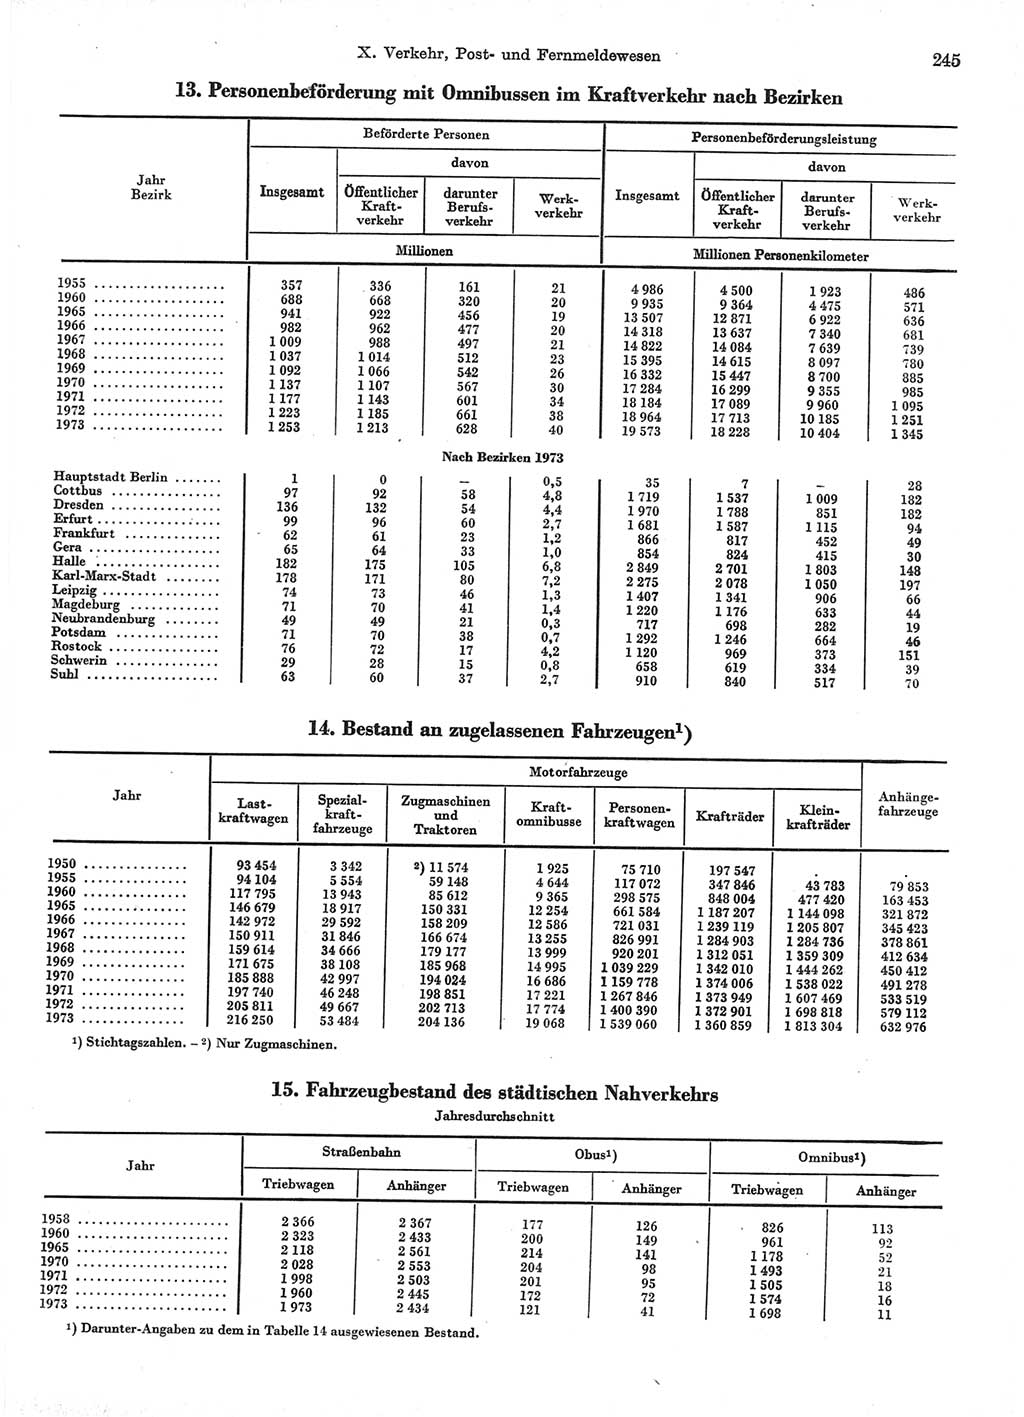 Statistisches Jahrbuch der Deutschen Demokratischen Republik (DDR) 1974, Seite 245 (Stat. Jb. DDR 1974, S. 245)